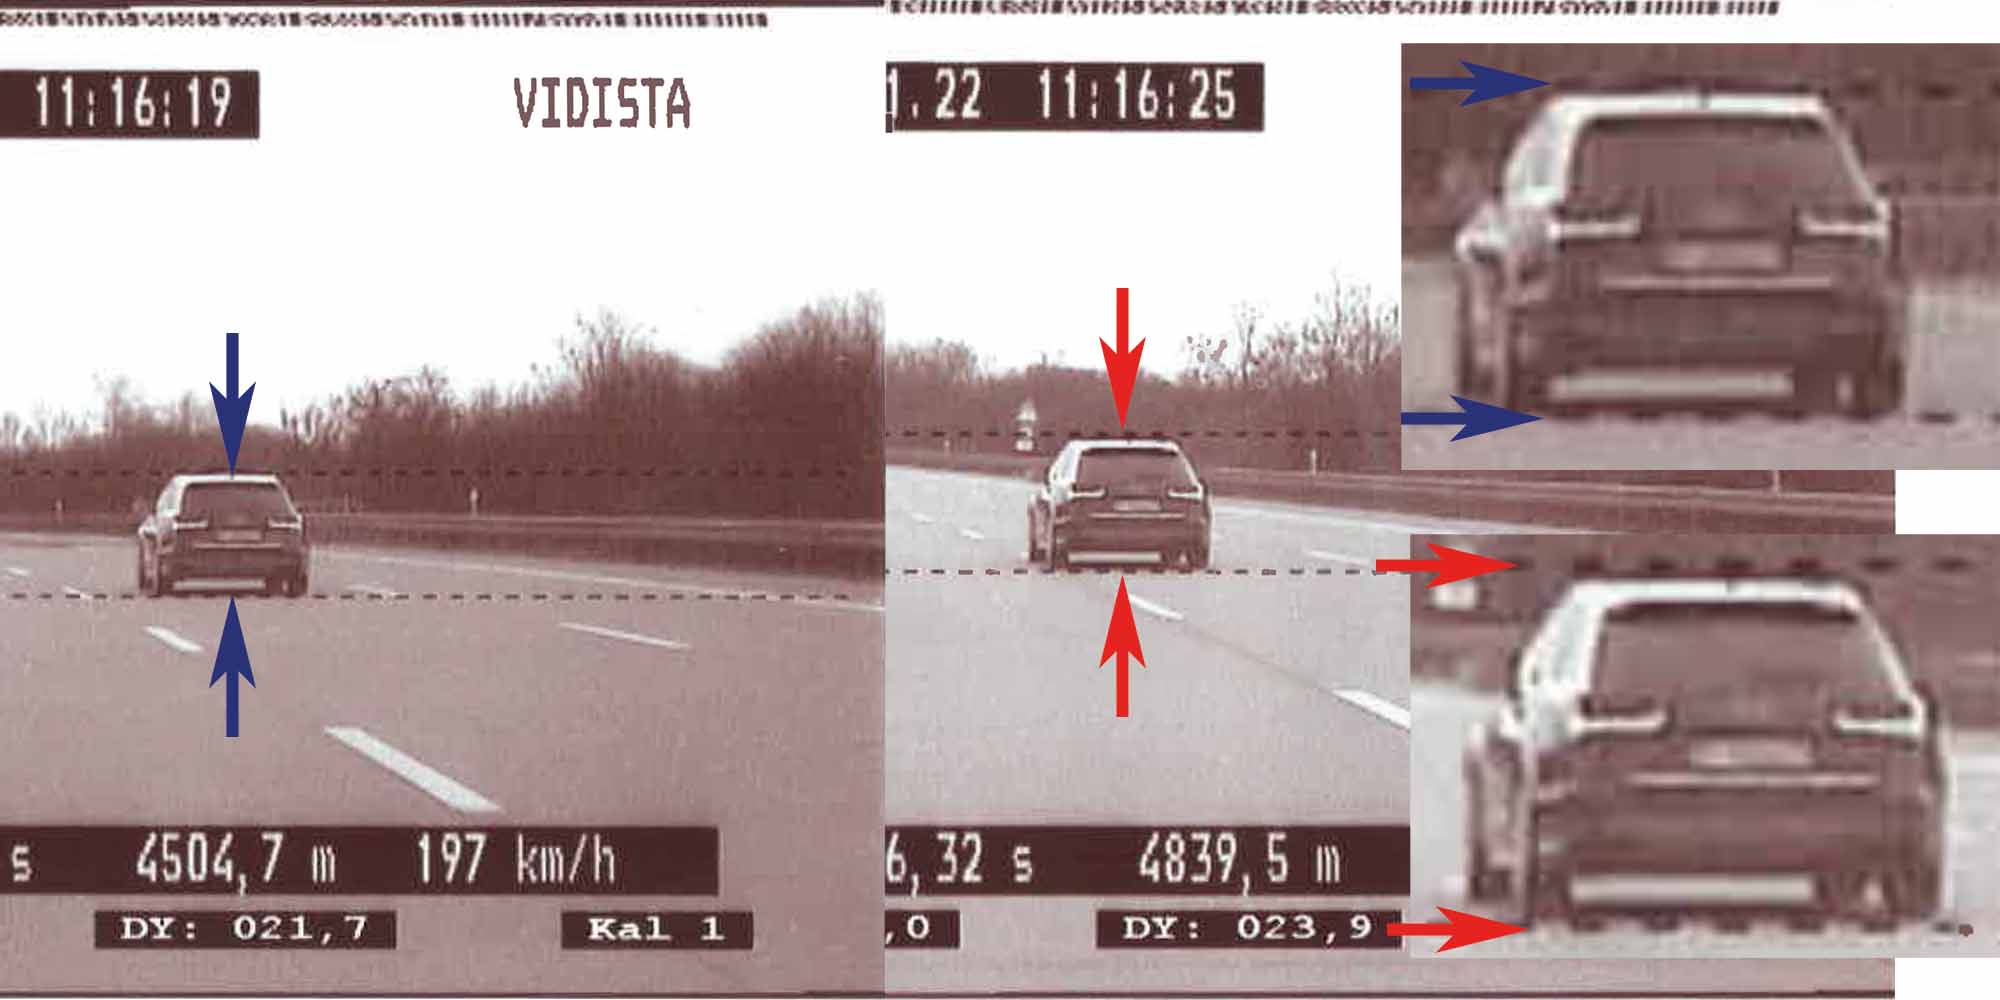 ViDistA - Auswertelinien im Videobild als Grundlage der Abstandskorrektur